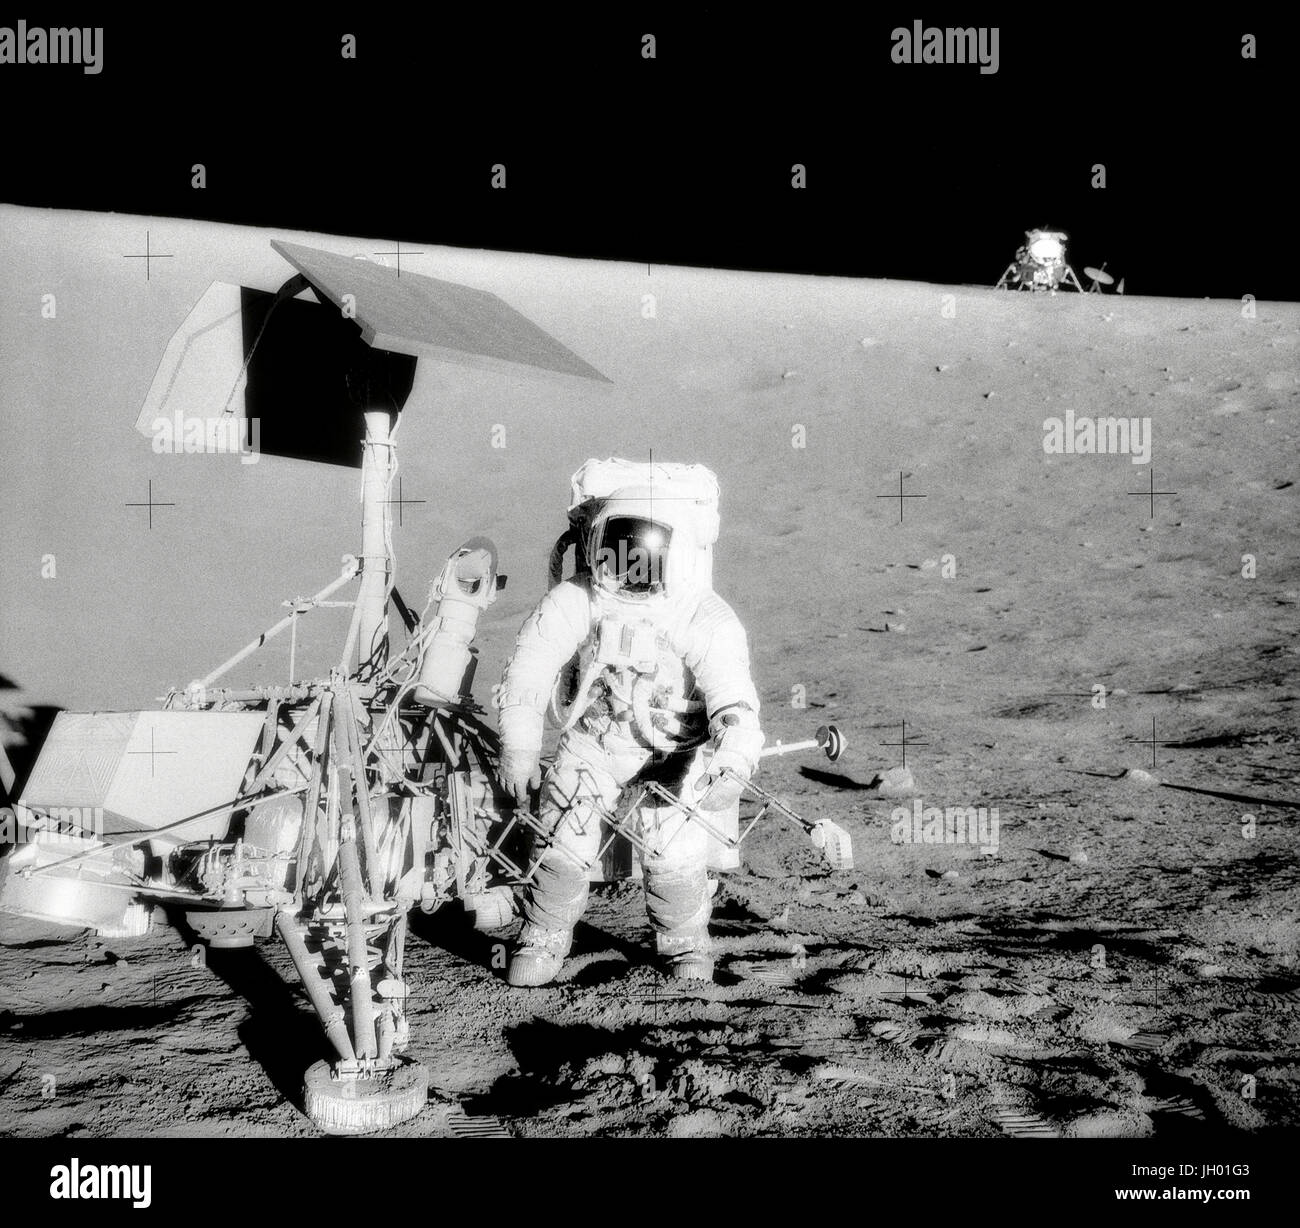 Conrad und Landvermesser am Hang eines Kraters. Charles Conrad Jr., Kommandant von Apollo 12, untersucht die unbemannte Raumsonde Surveyor III während der zweiten Extravehicular Activity (EVA-2). Die Mondlandefähre (LM) "Intrepid" im Hintergrund rechts ist. Dieses Bild wurde vom Astronaut Alan L. Bean, Lunar Module pilot aufgenommen. Die "Intrepid" landete auf des Mondes Ozean der Stürme nur 600 Fuß von Surveyor III. Die Fernsehkamera und mehrere andere Komponenten wurden Landvermesser III entnommen und brachte zurück auf die Erde für die wissenschaftliche Analyse. Landvermesser III auf dem Mond am 19. April 1967 zerstörte. Stockfoto